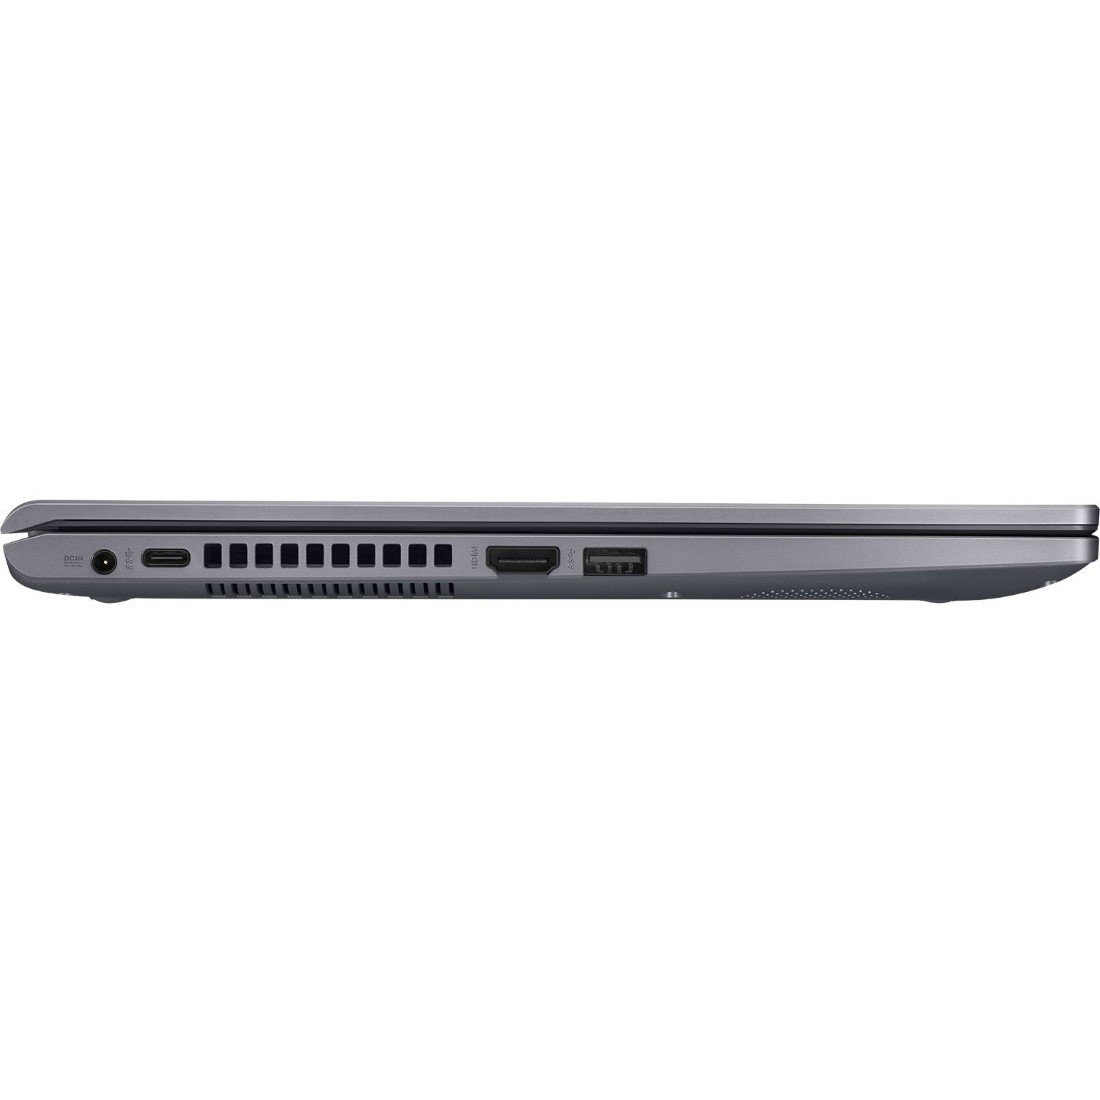 Ноутбук Asus Vivobook A512ua Bq625 Купить